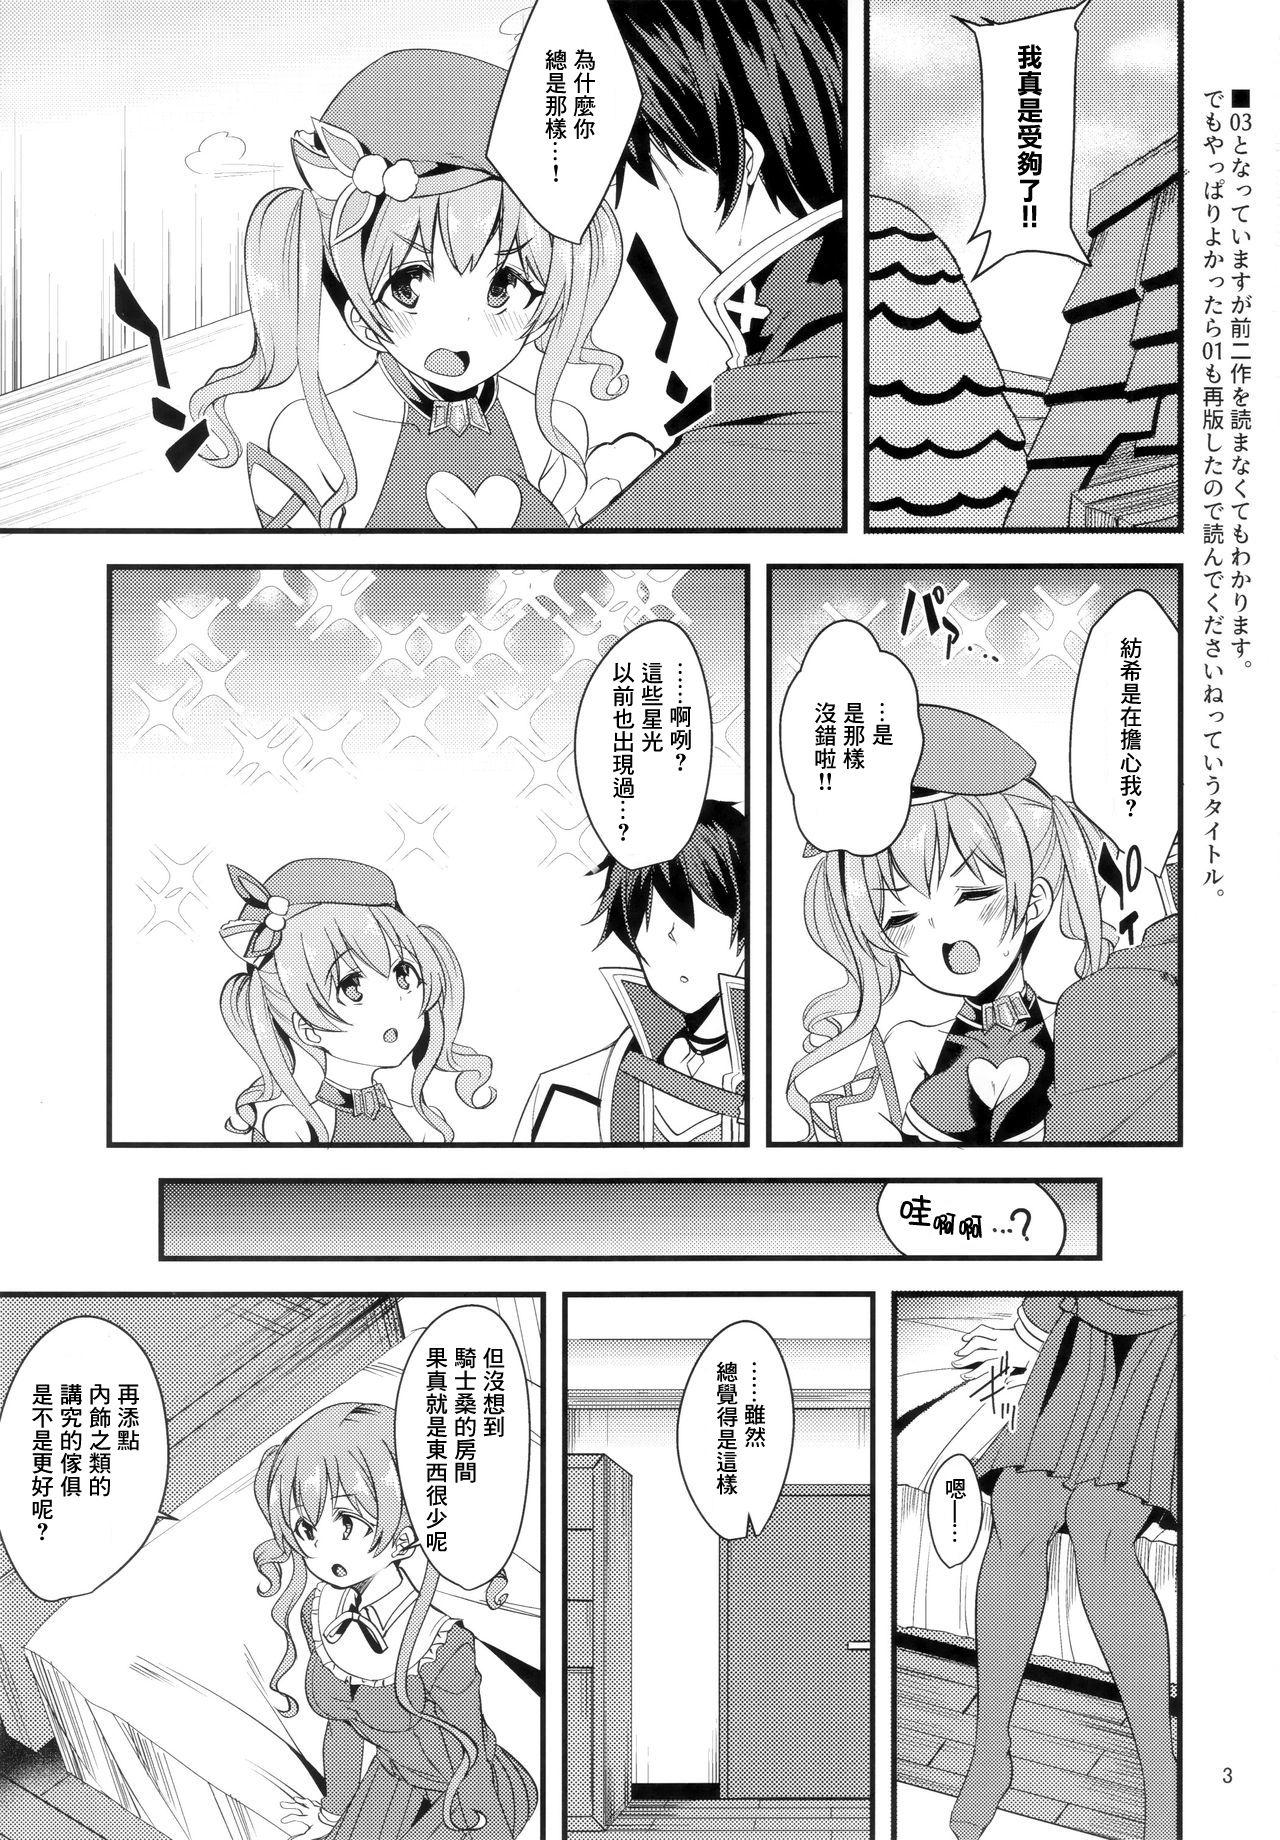  Tsumugi Make Heroine Move!! 03 - Princess connect Rough - Page 3